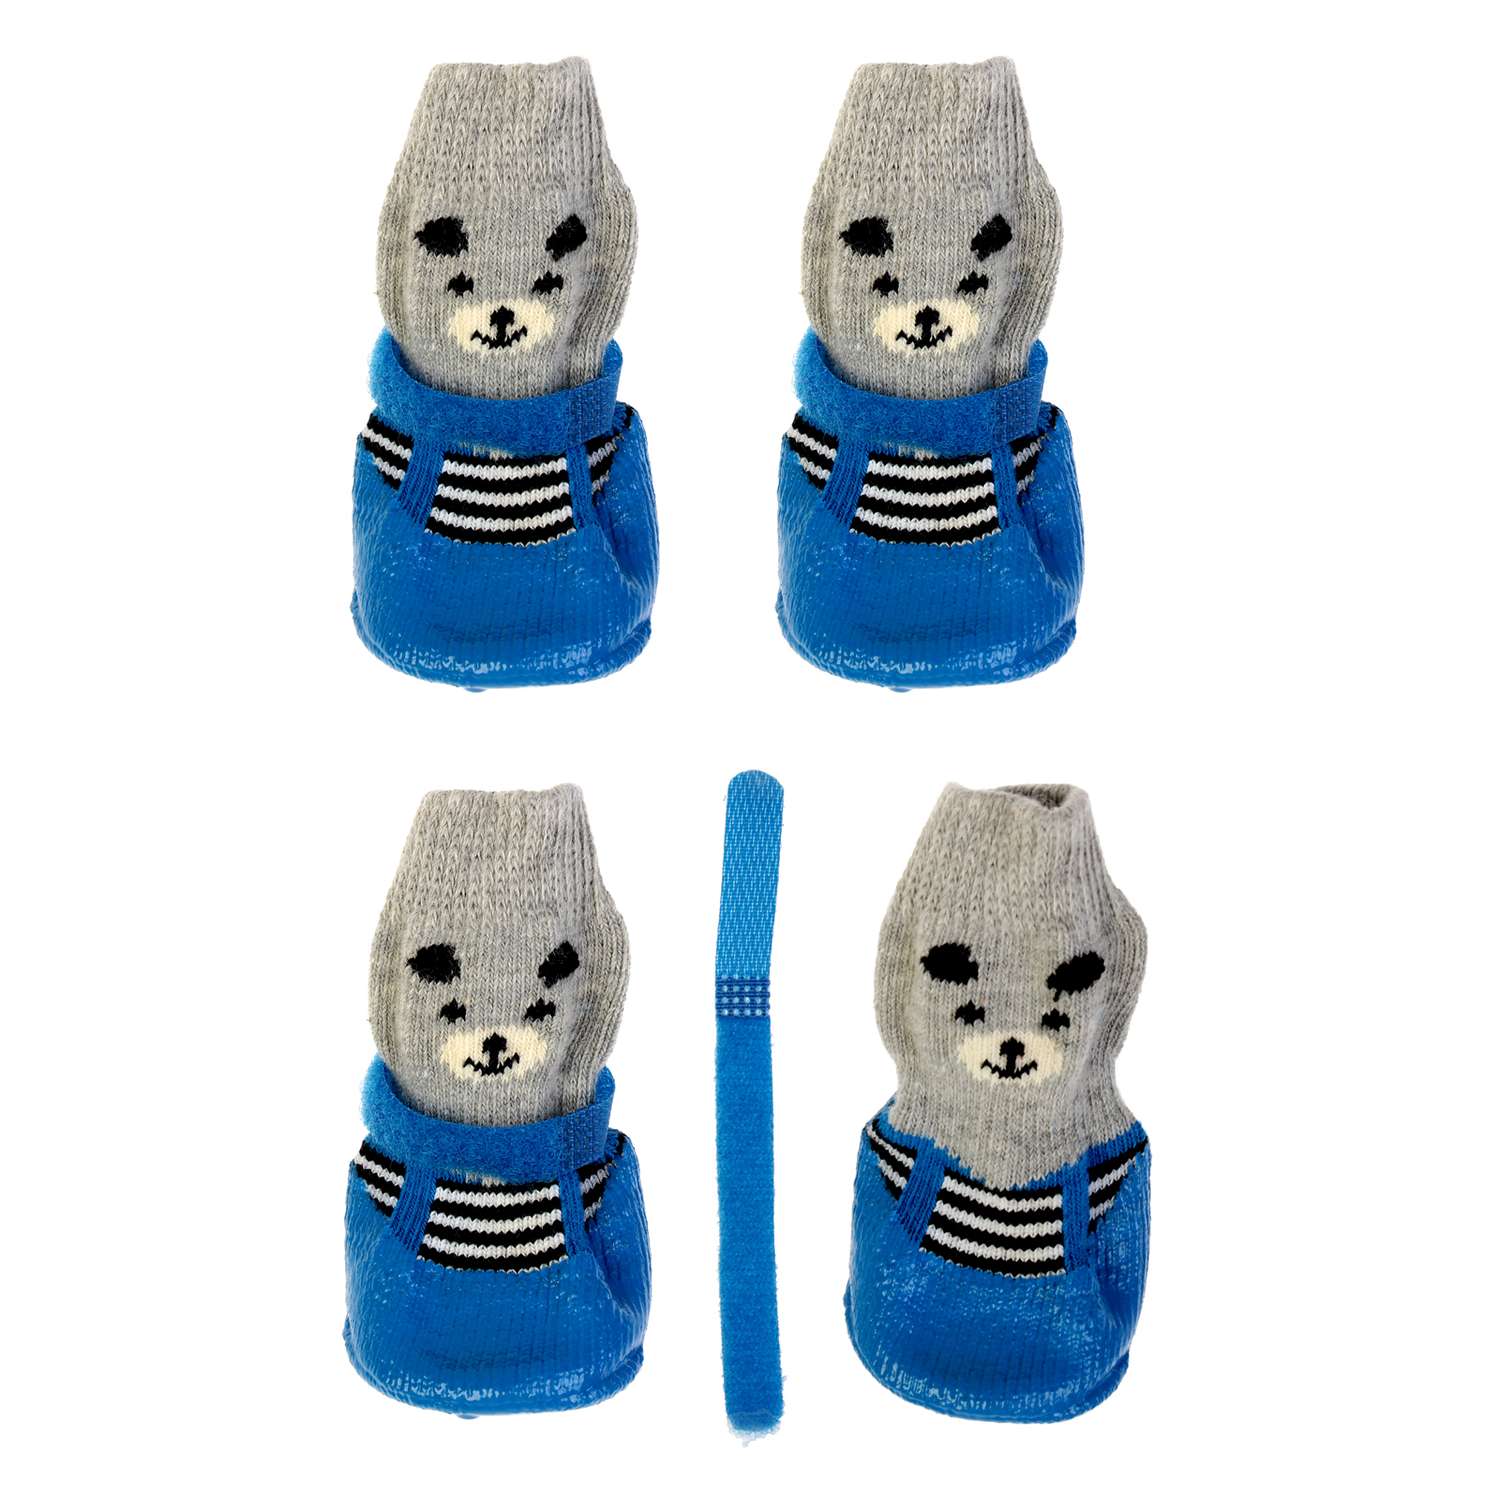 Носки Пижон «Мишки» с прорезиненной подошвой размер S 4 х 5 см синие - фото 1